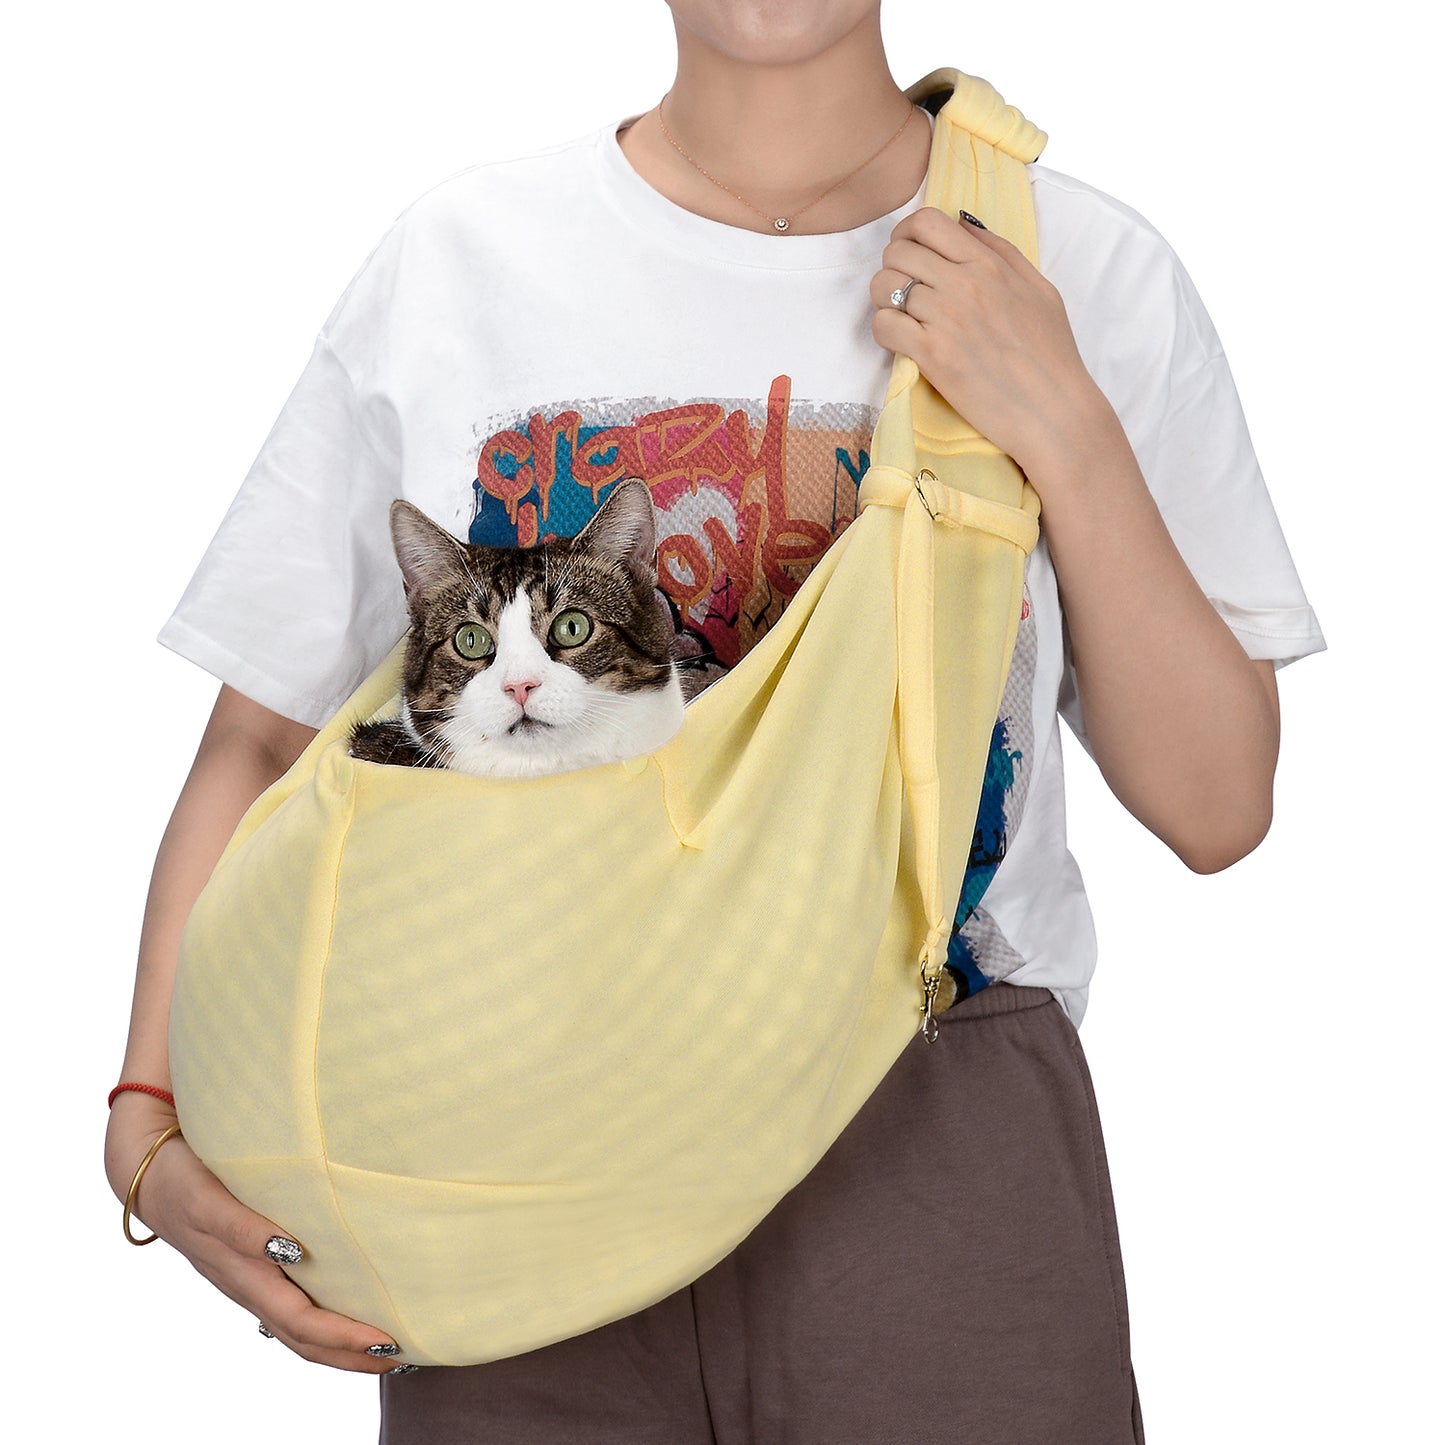 Reversible Cat Sling Carrier